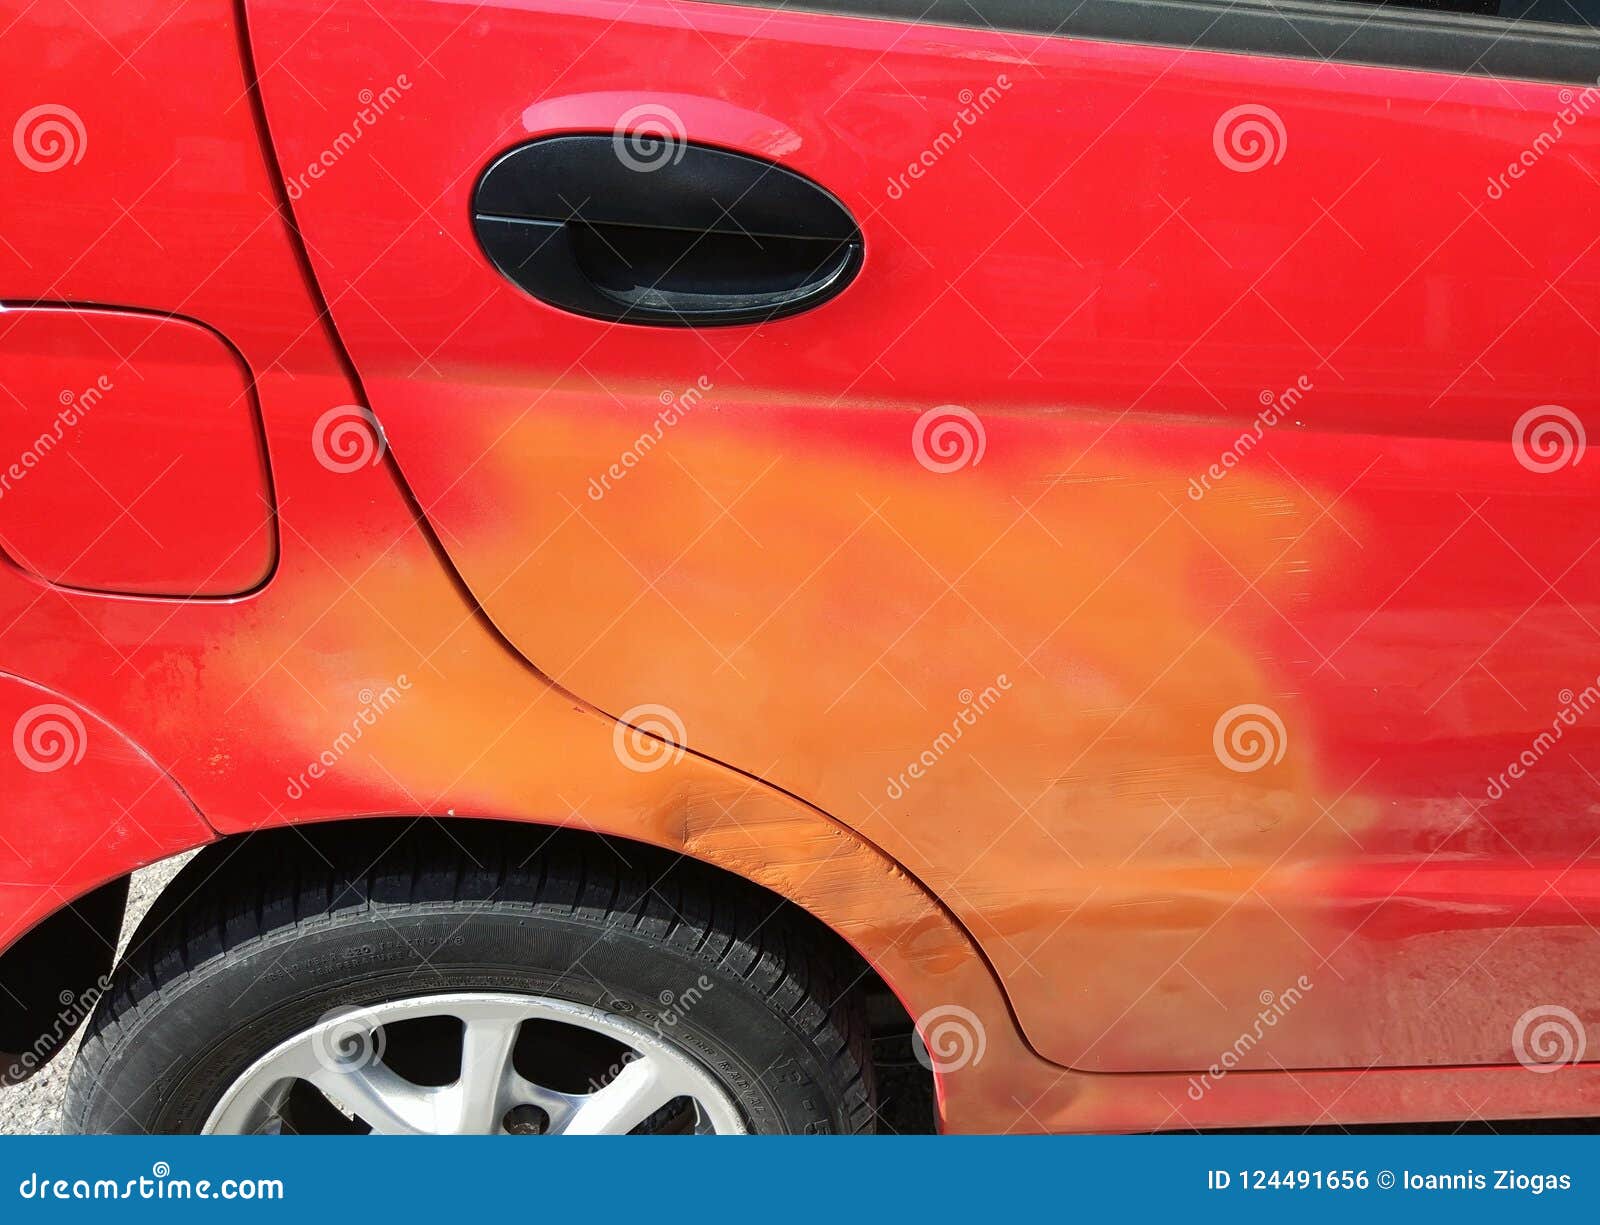 red orange color car